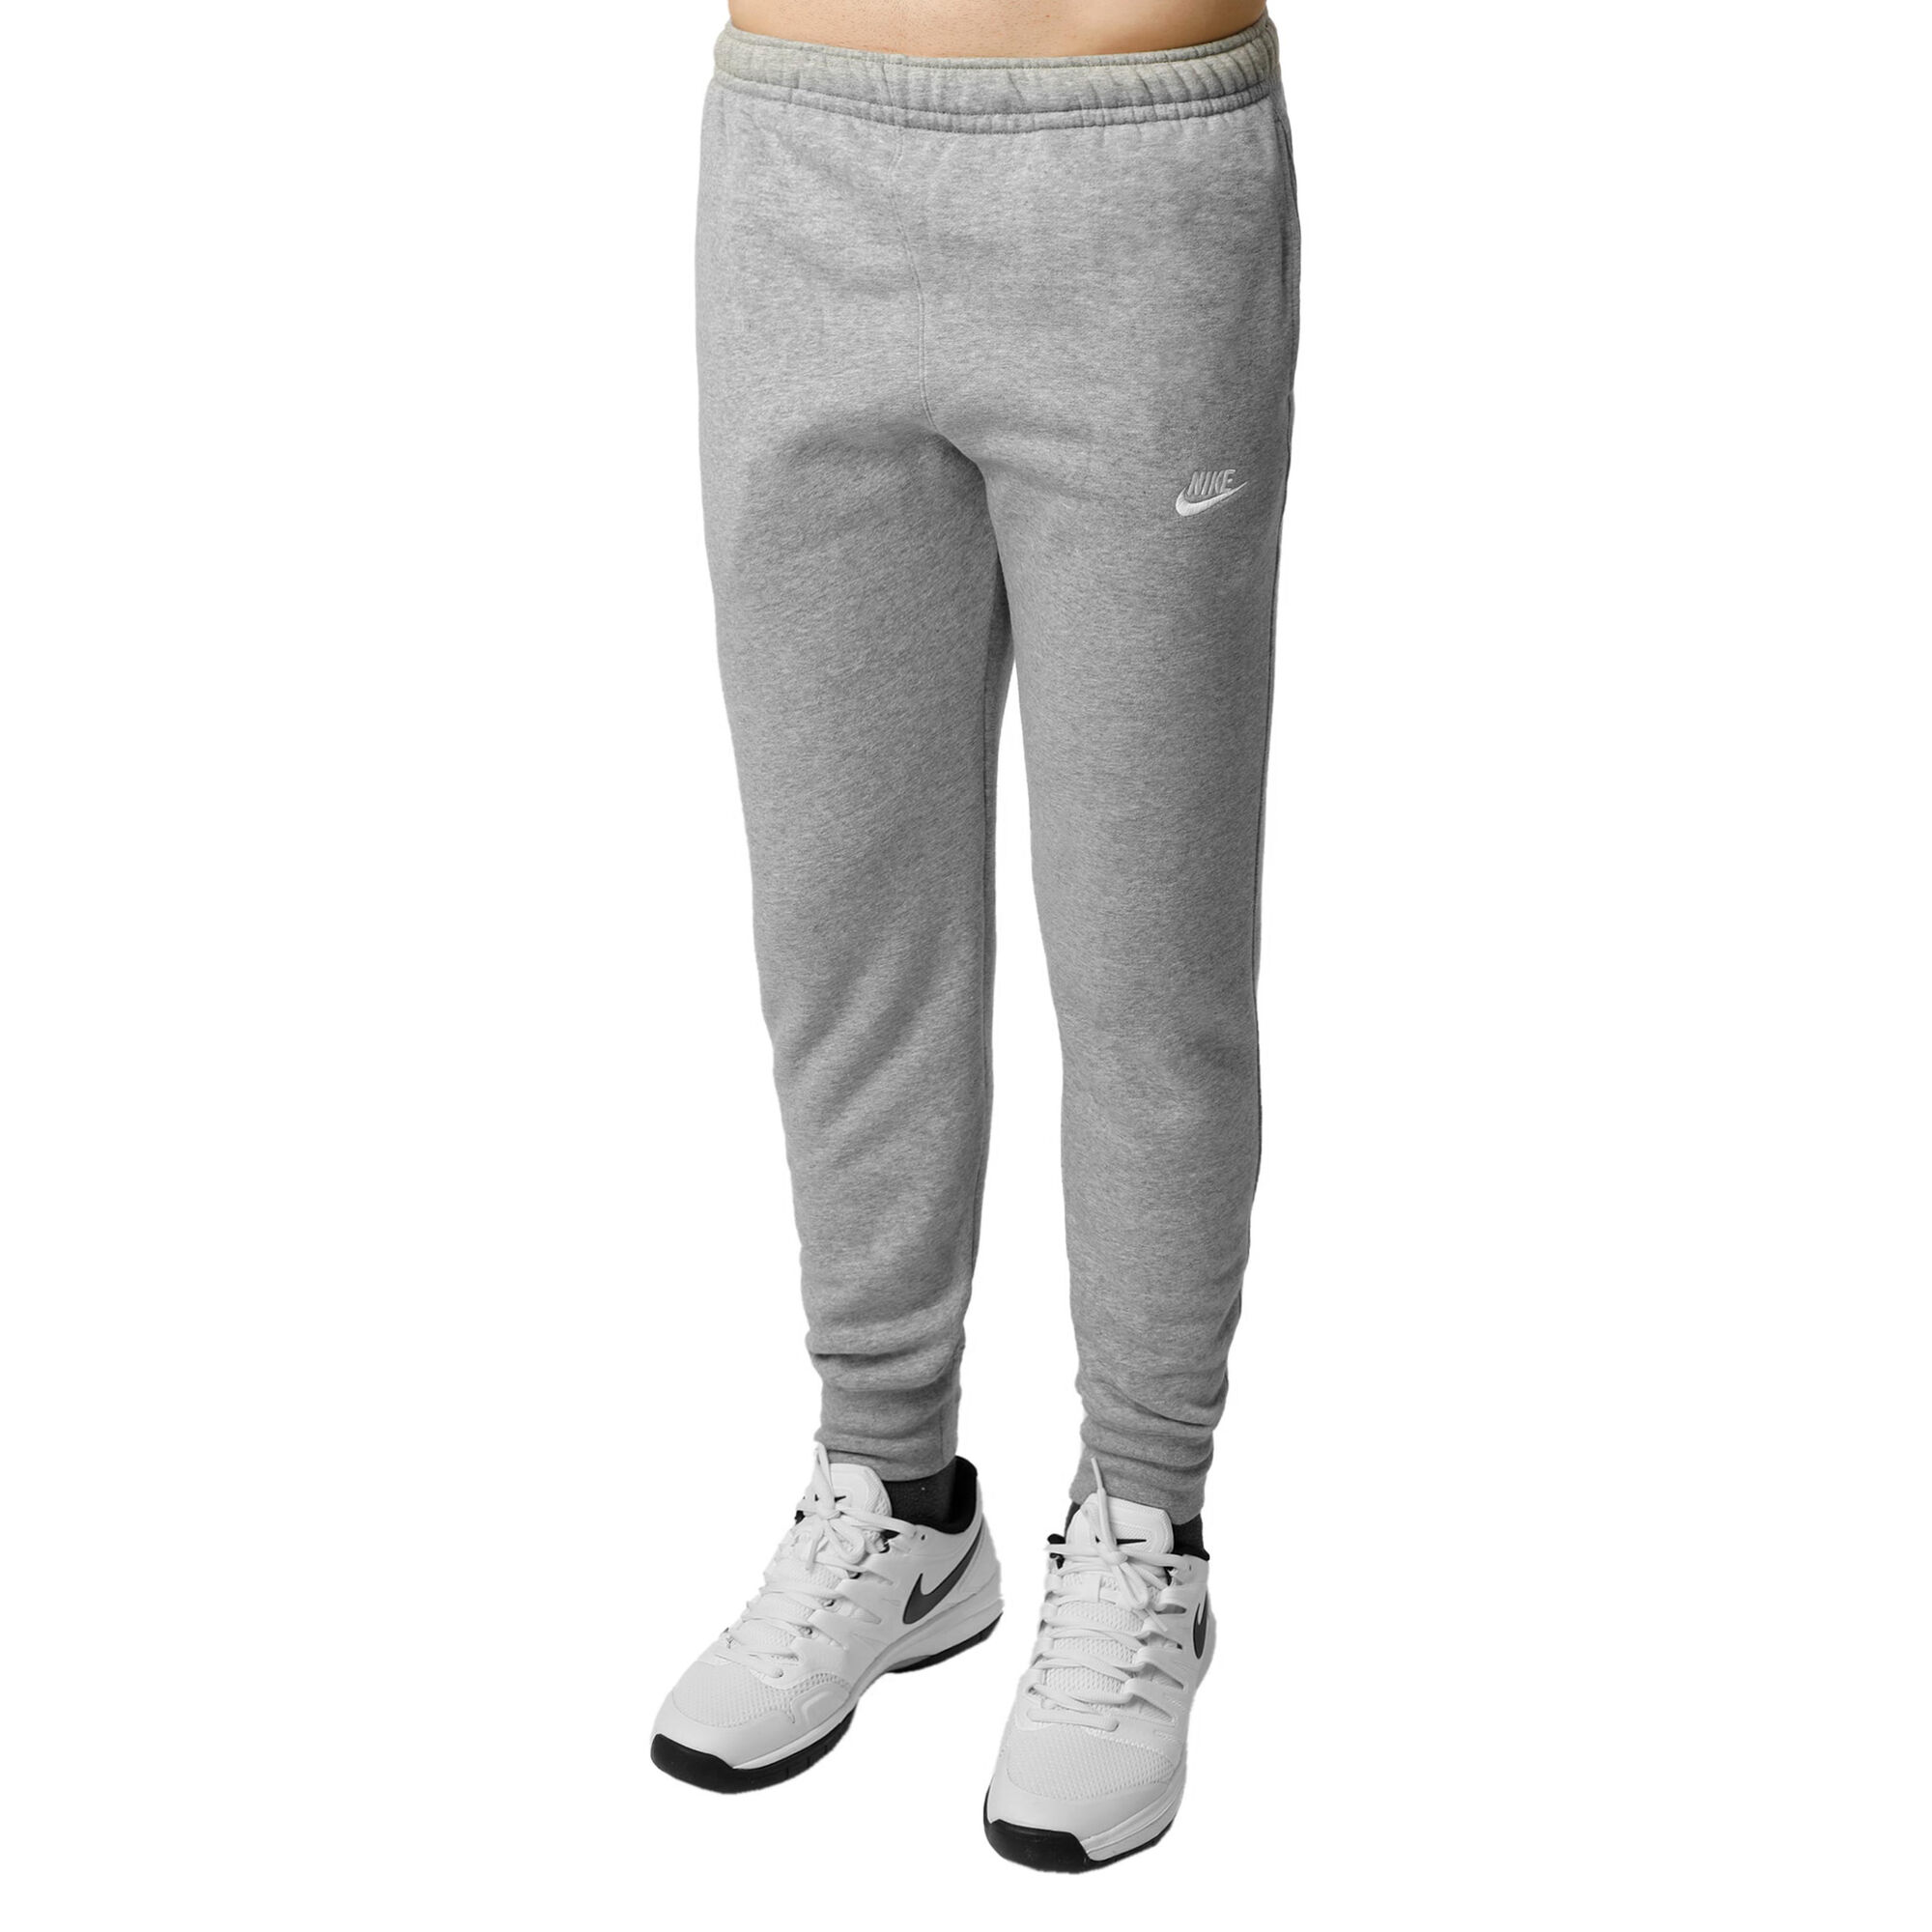 Buy Nike Sportswear Club Fleece Training Pants Men Grey, Silver